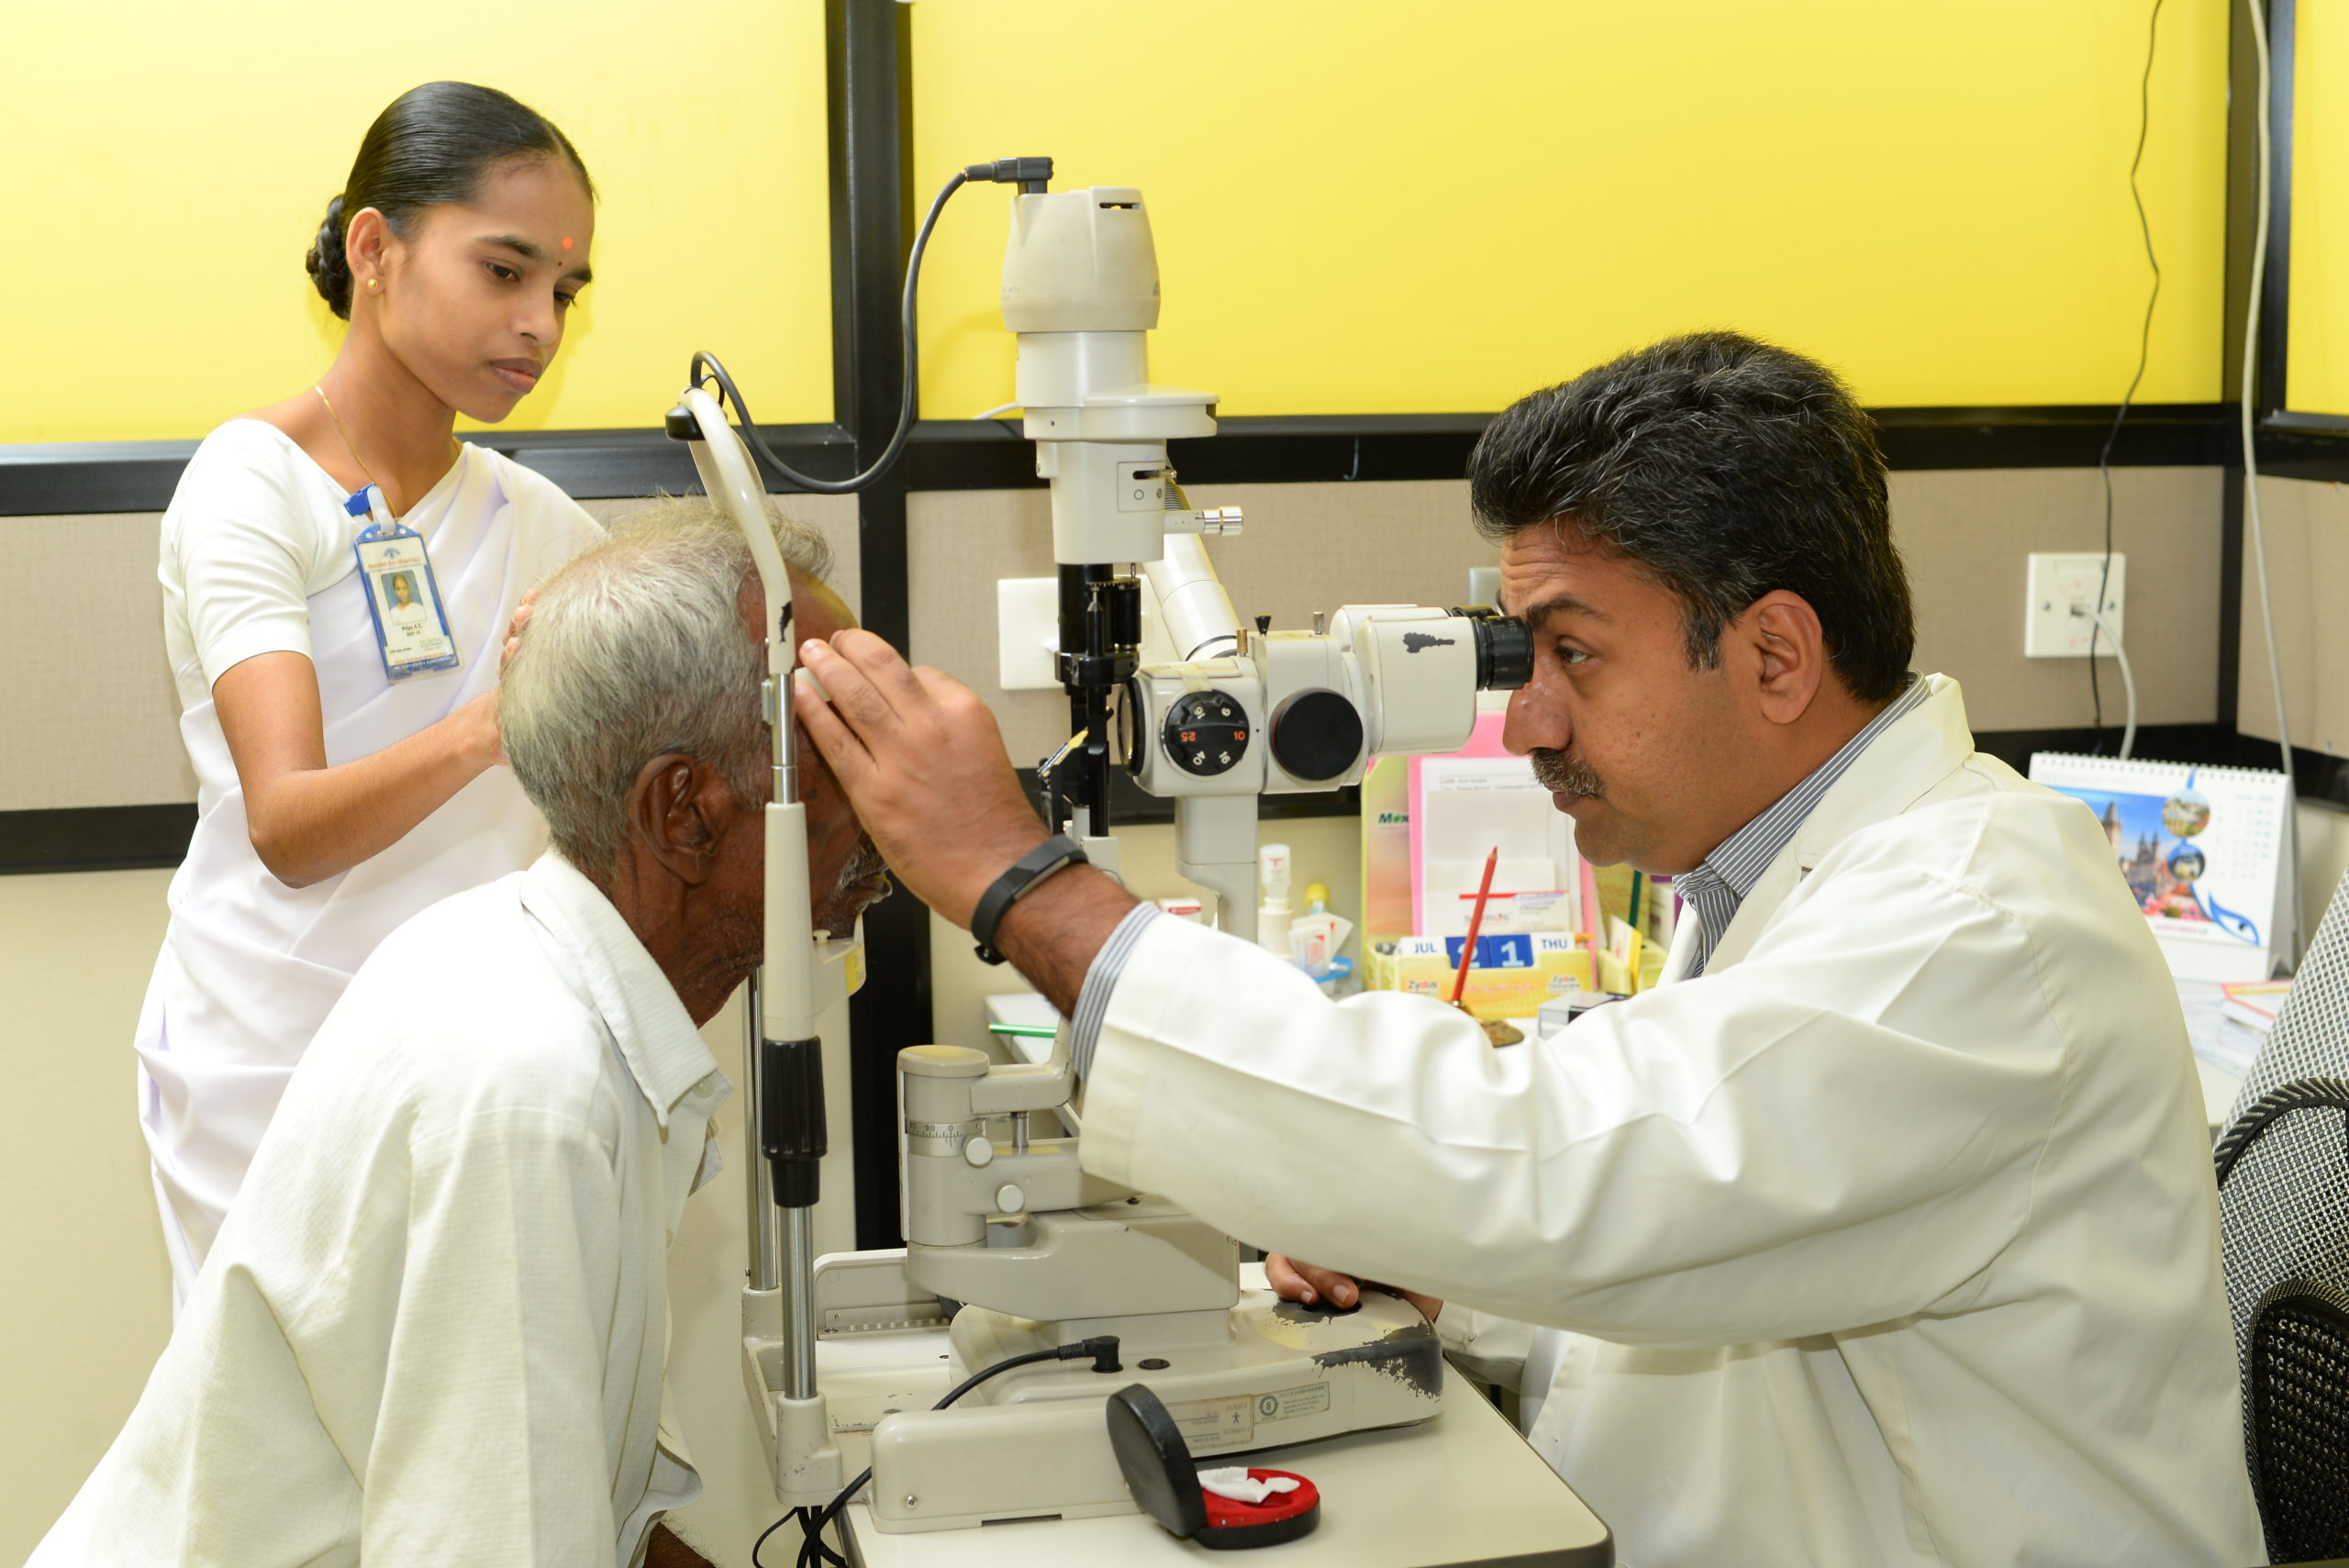 Ophthalmologist examining the eye, Puducherry, India. Photo Credit: ARAVIND EYE CARE SYSTEM